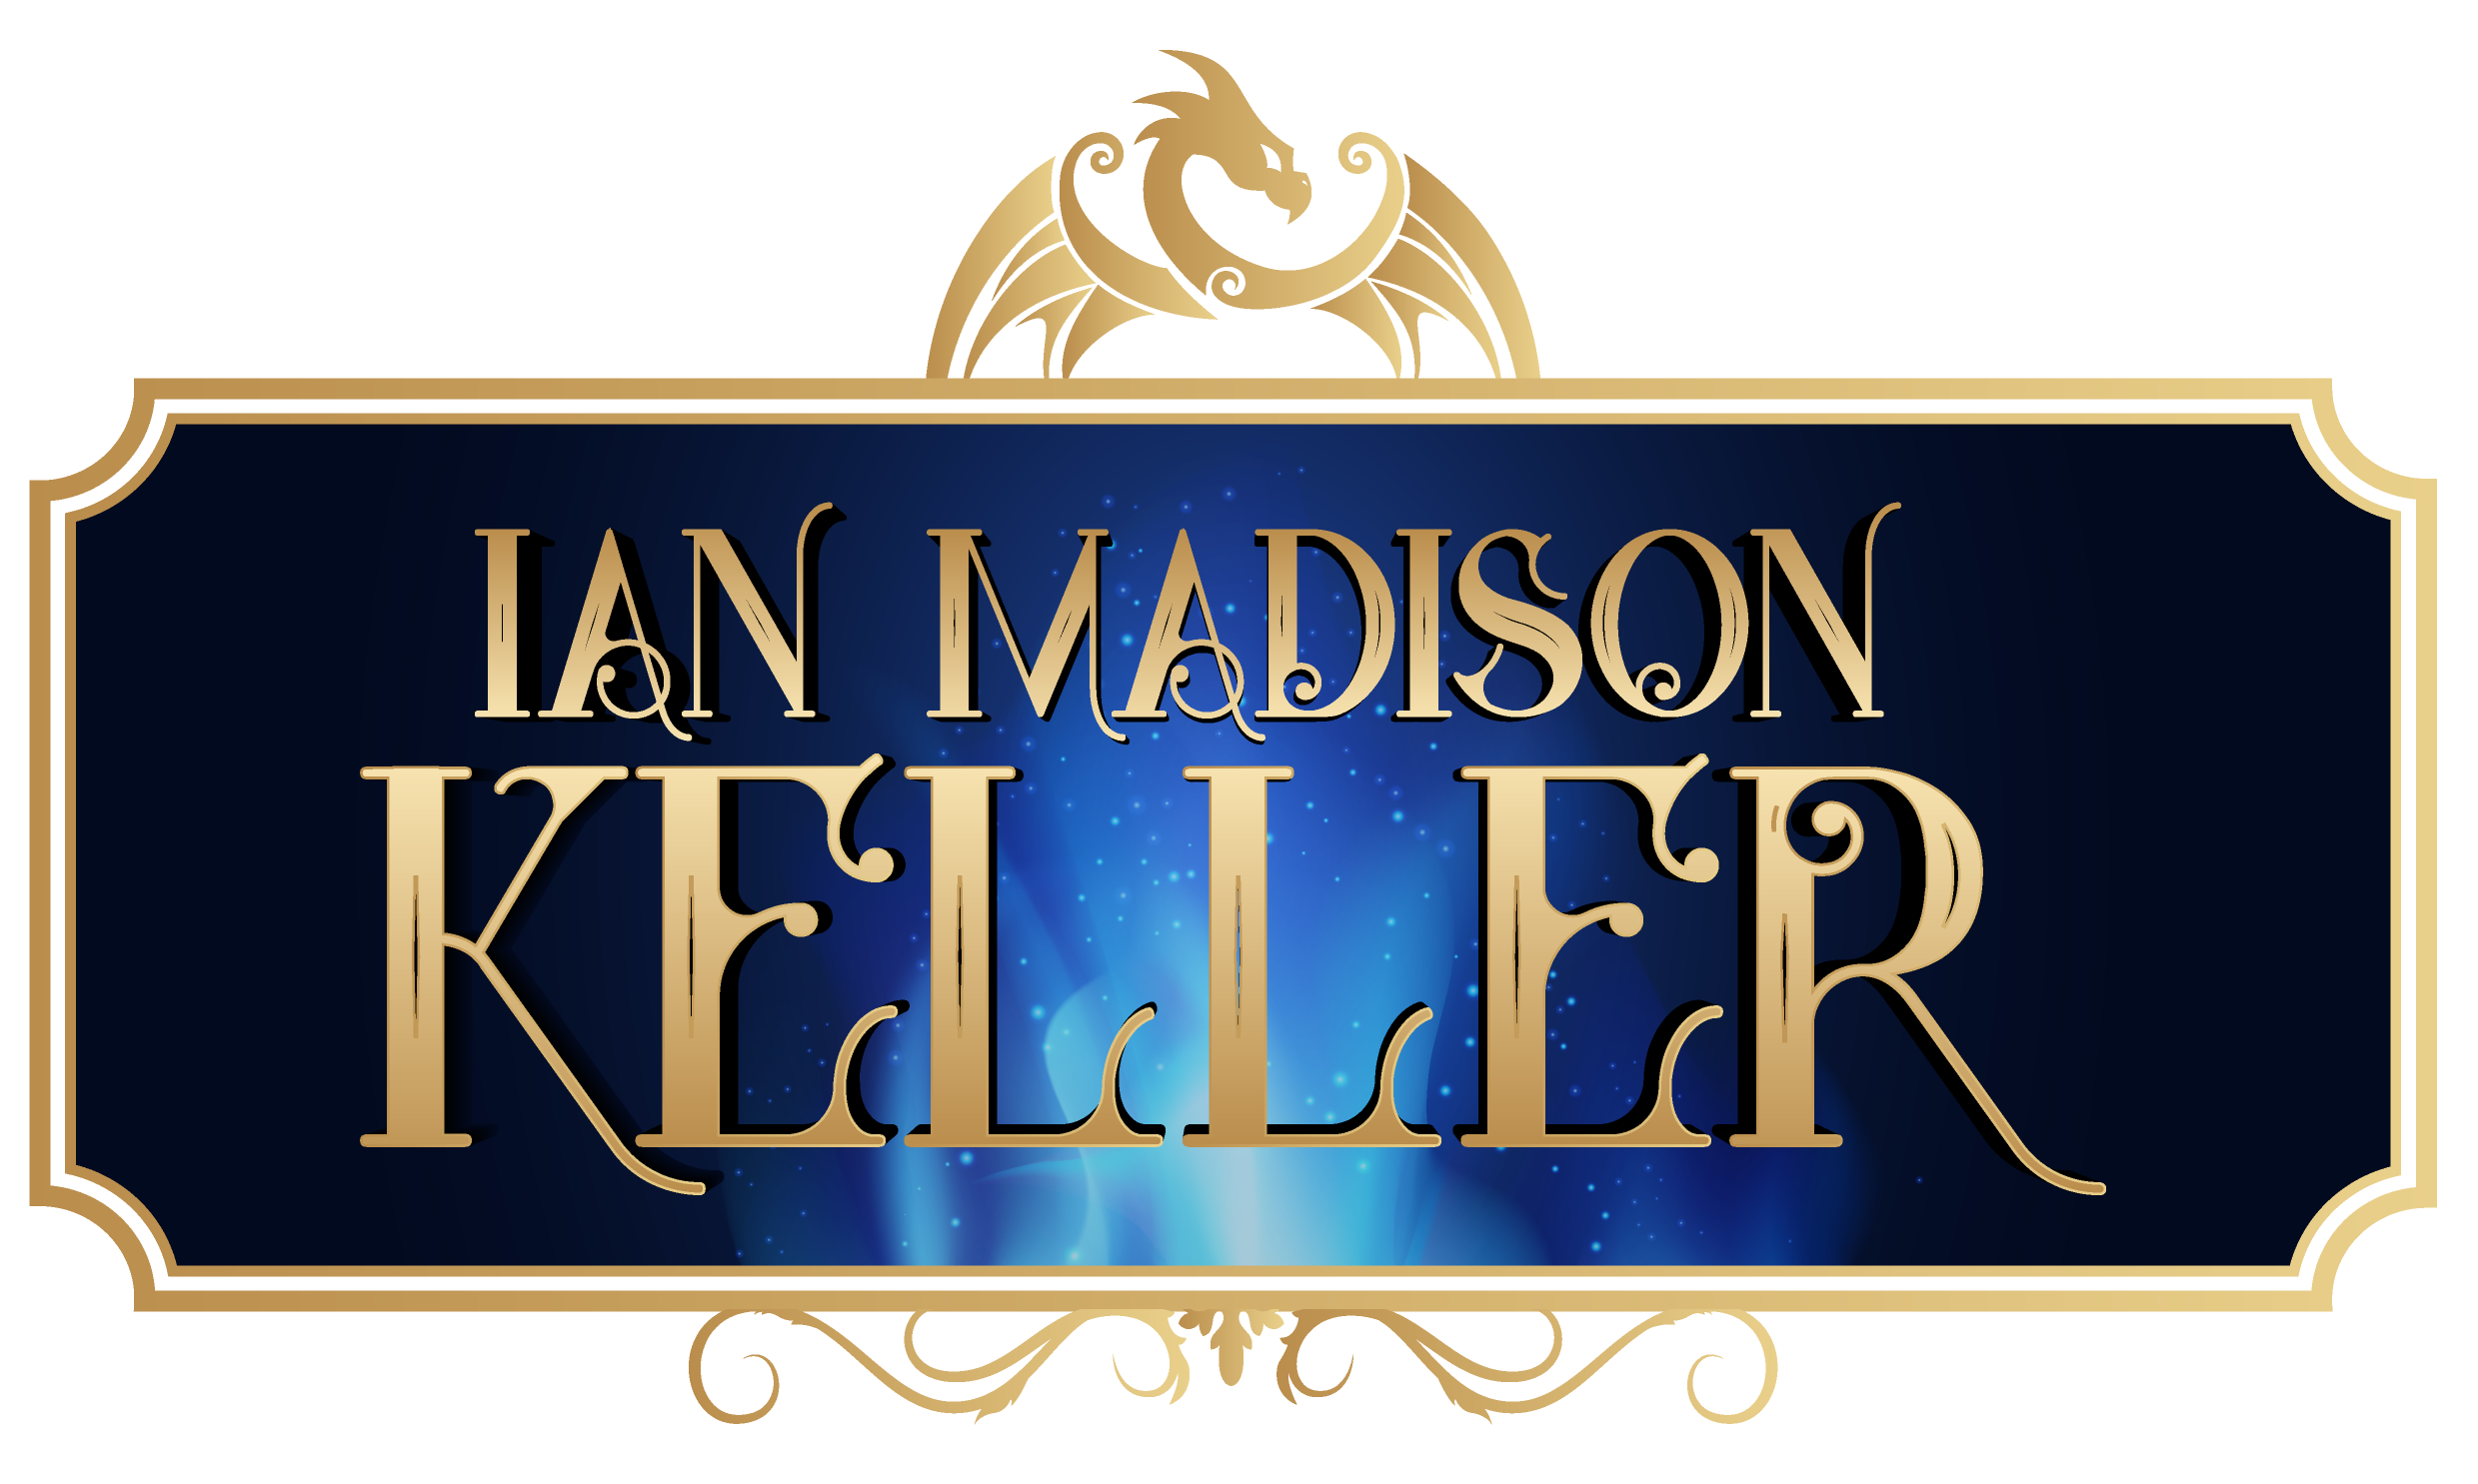 Ian Madison Keller